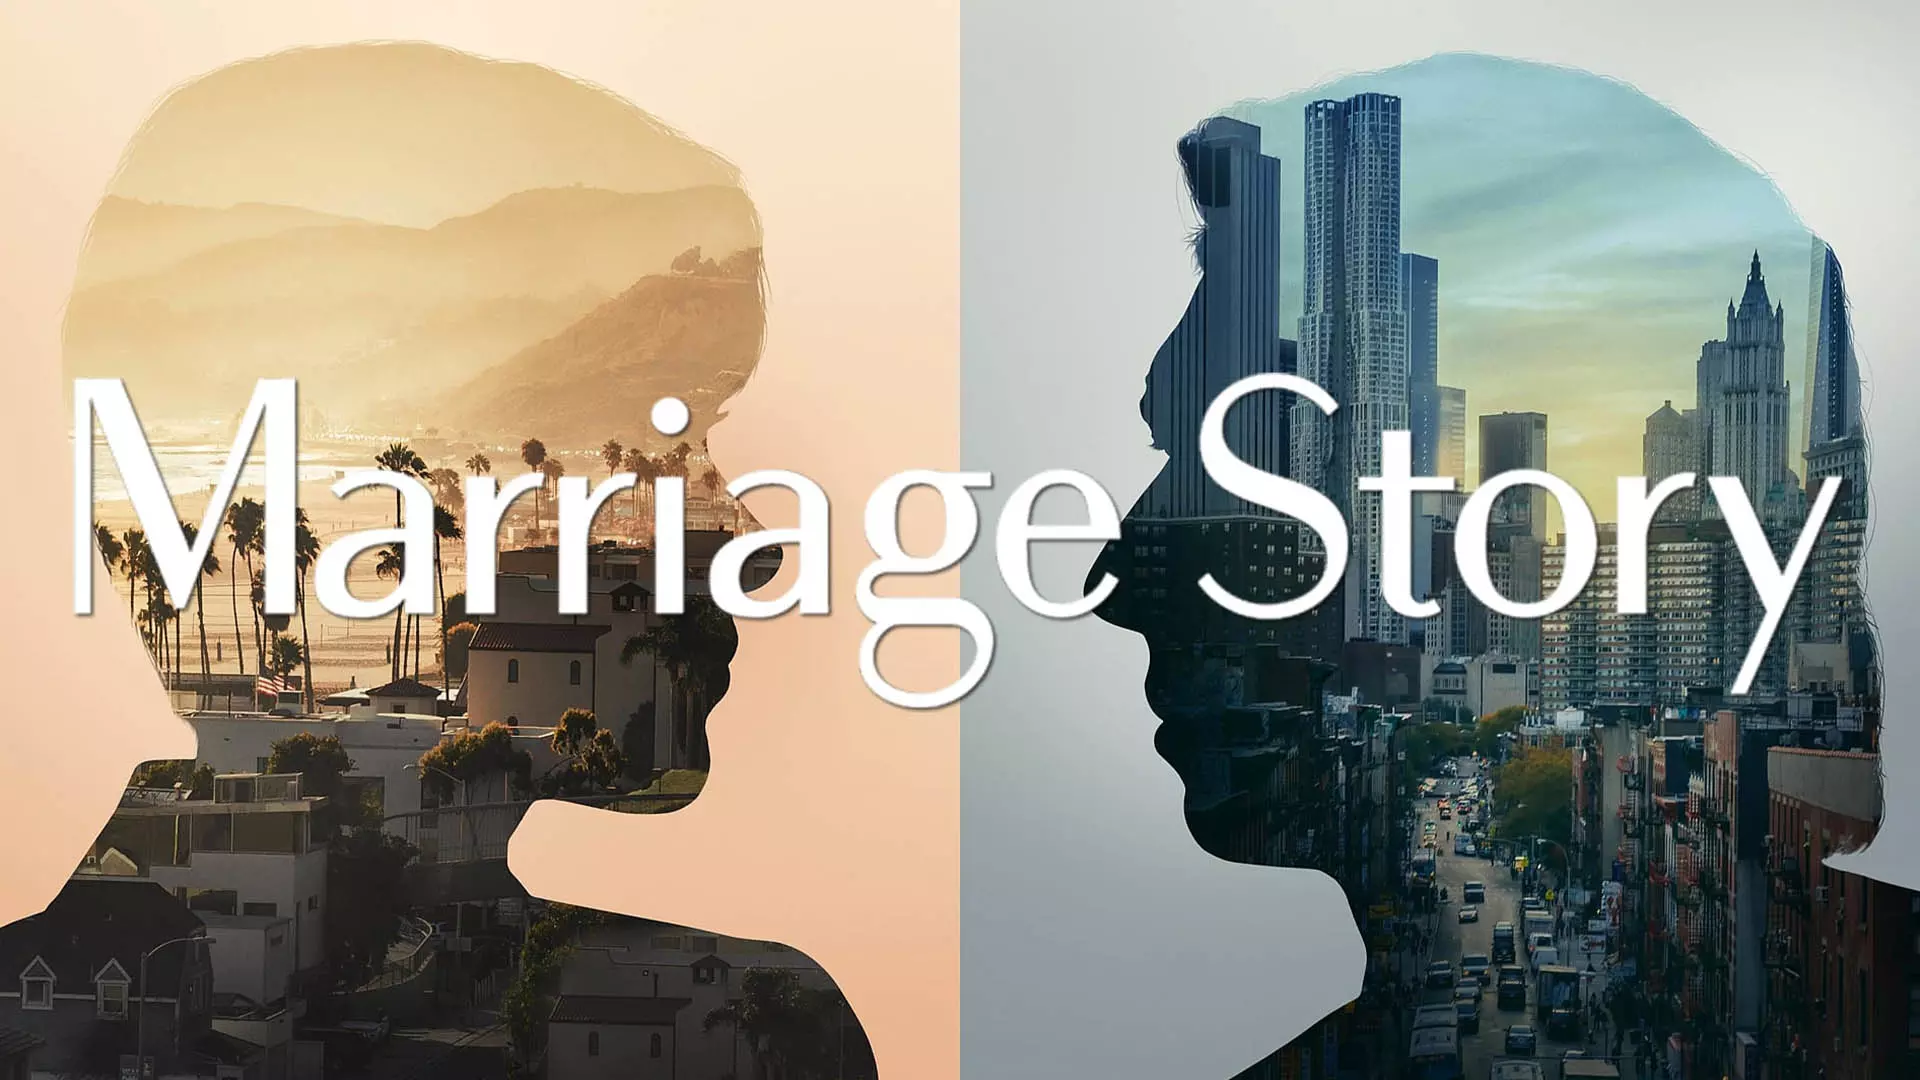 پوستر فیلم marriage story با تصویری از آدام درایور و اسکارلت جوهانسون